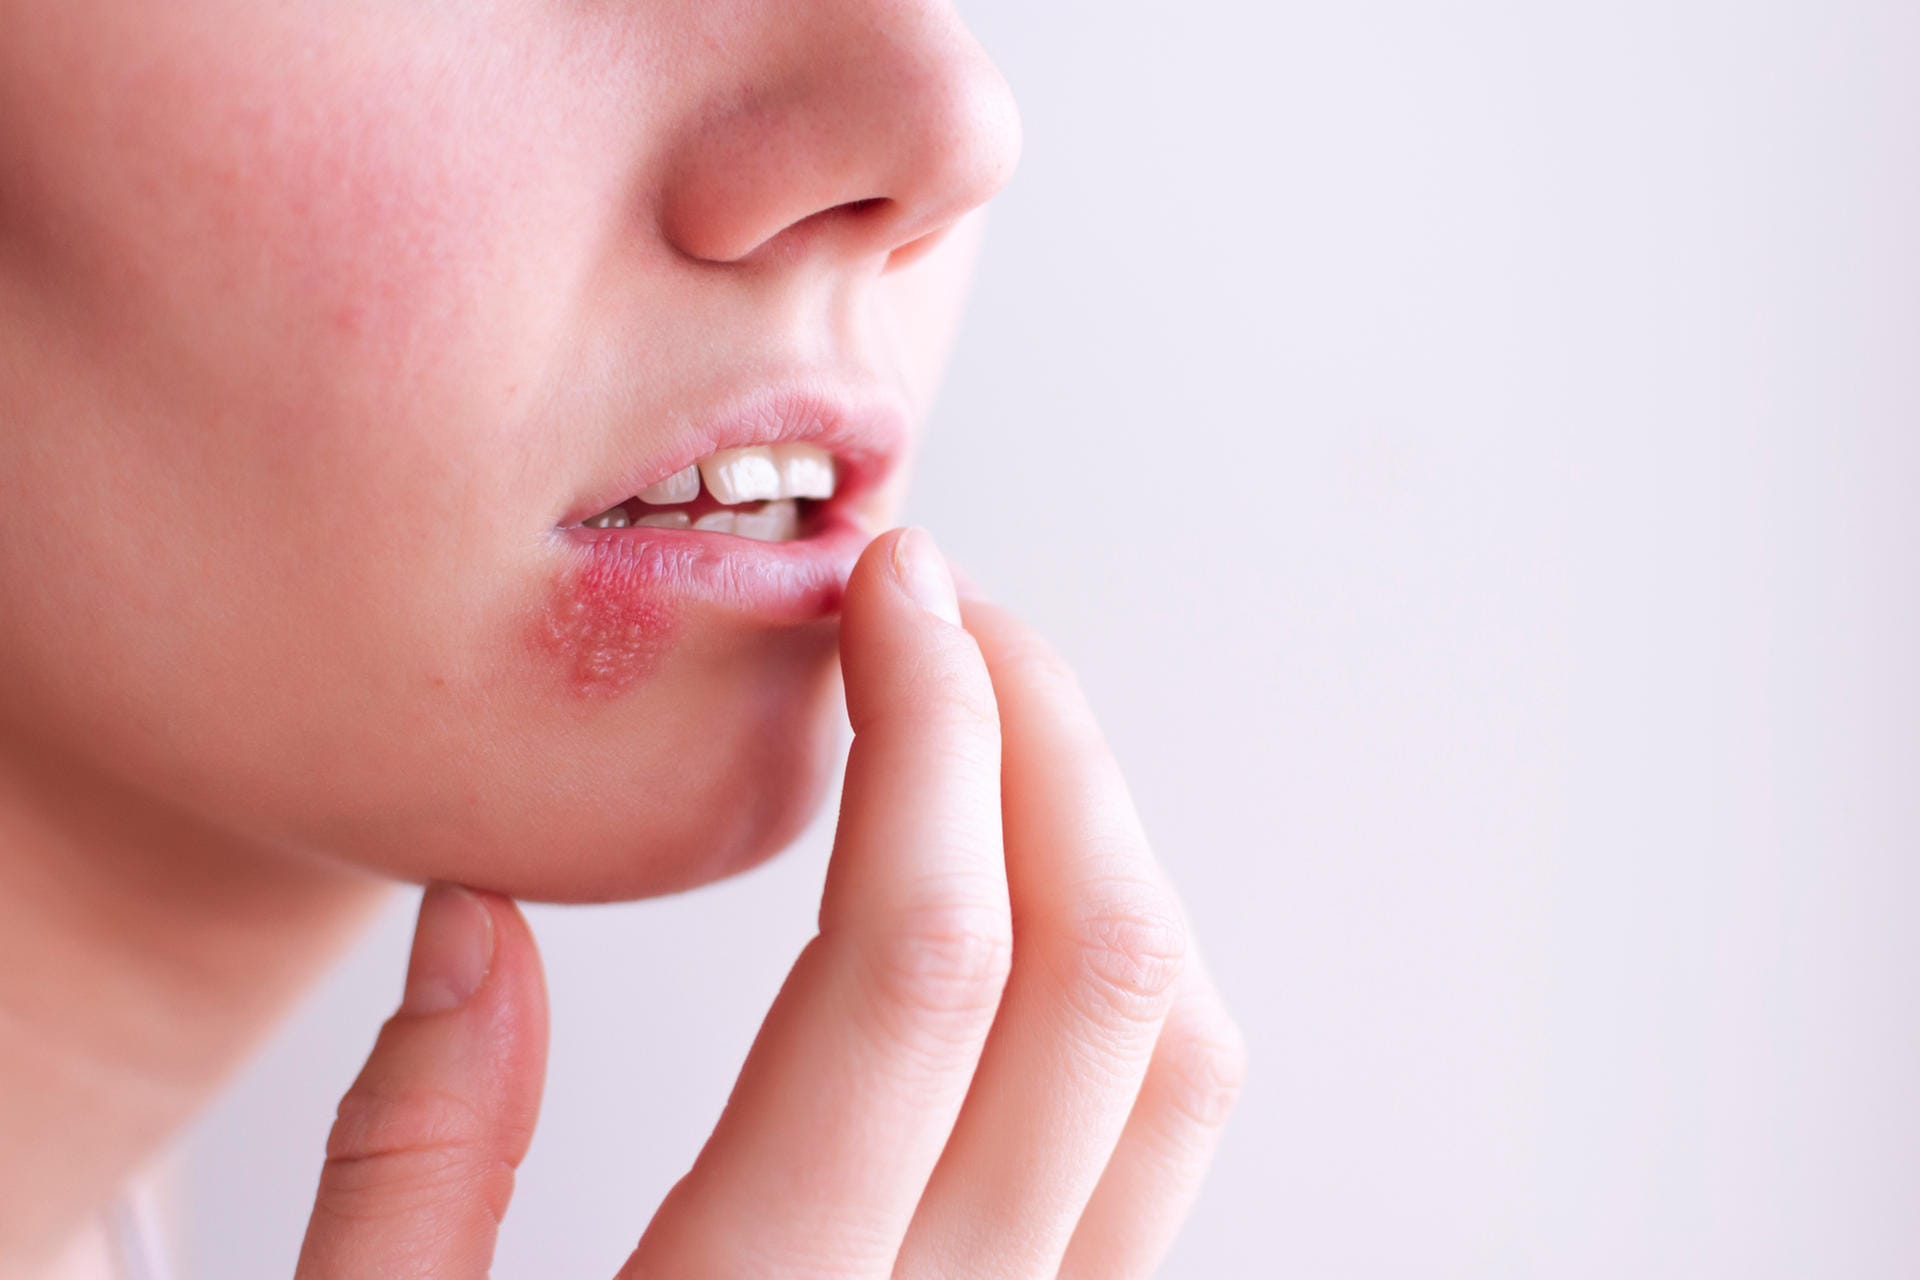 Mundfäule: Die Krankheit wird durch Herpes ausgelöst und ist stark ansteckend.